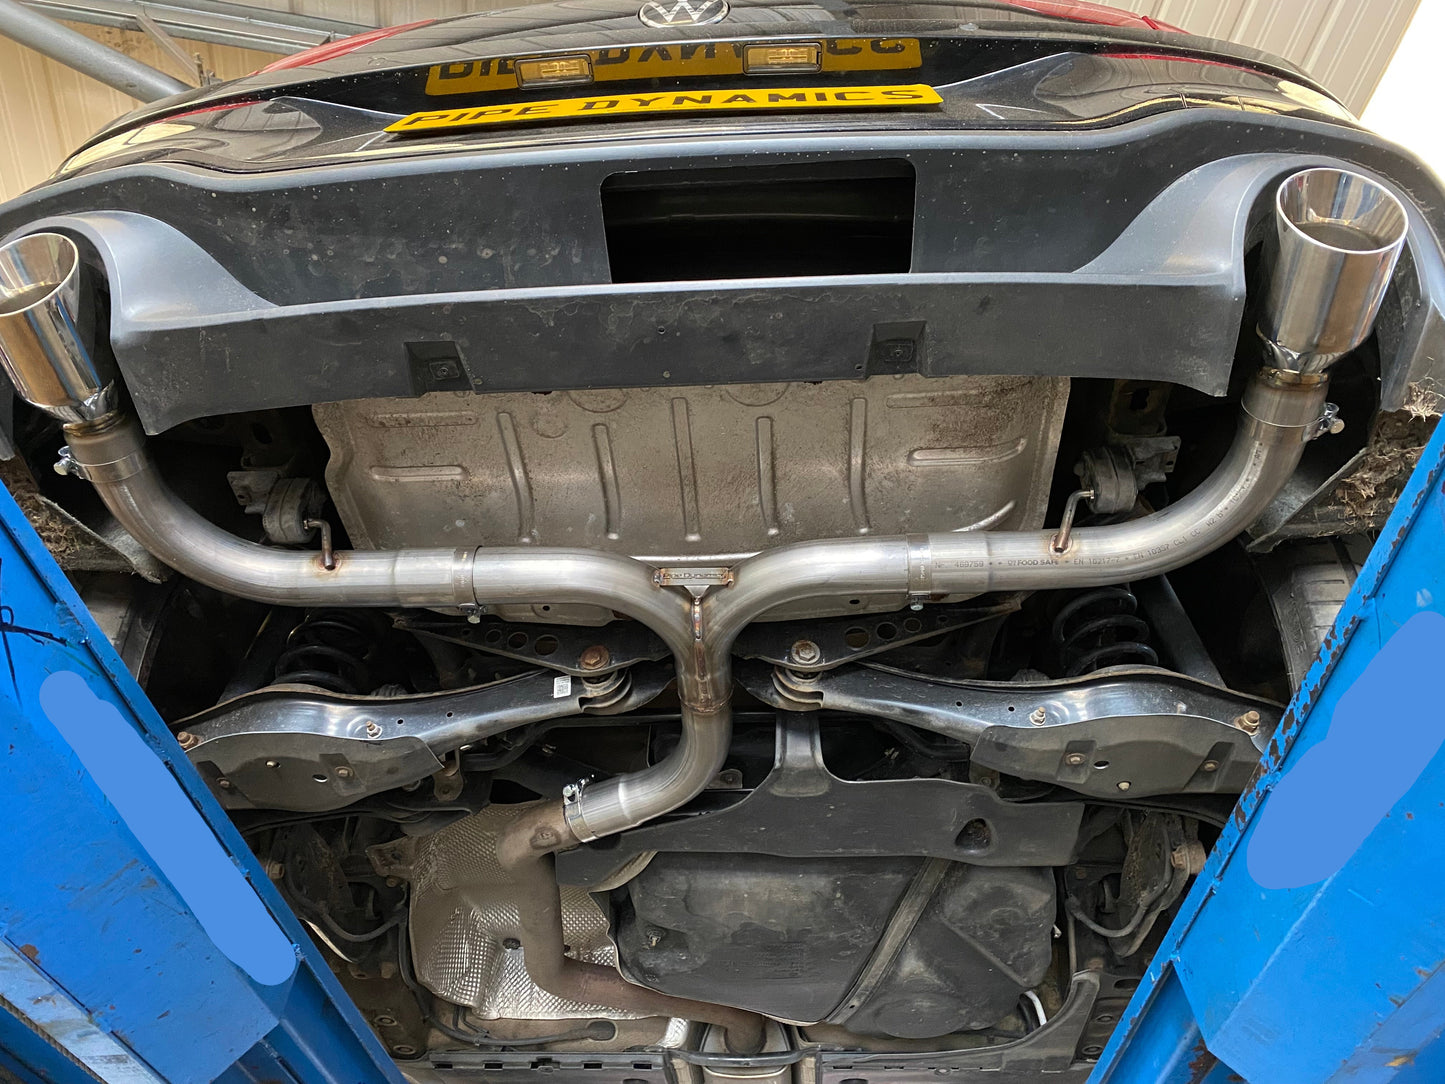 VW Golf MK8 2.0 GTI -Back Box Delete Pipe Dynamics Performance Exhaust